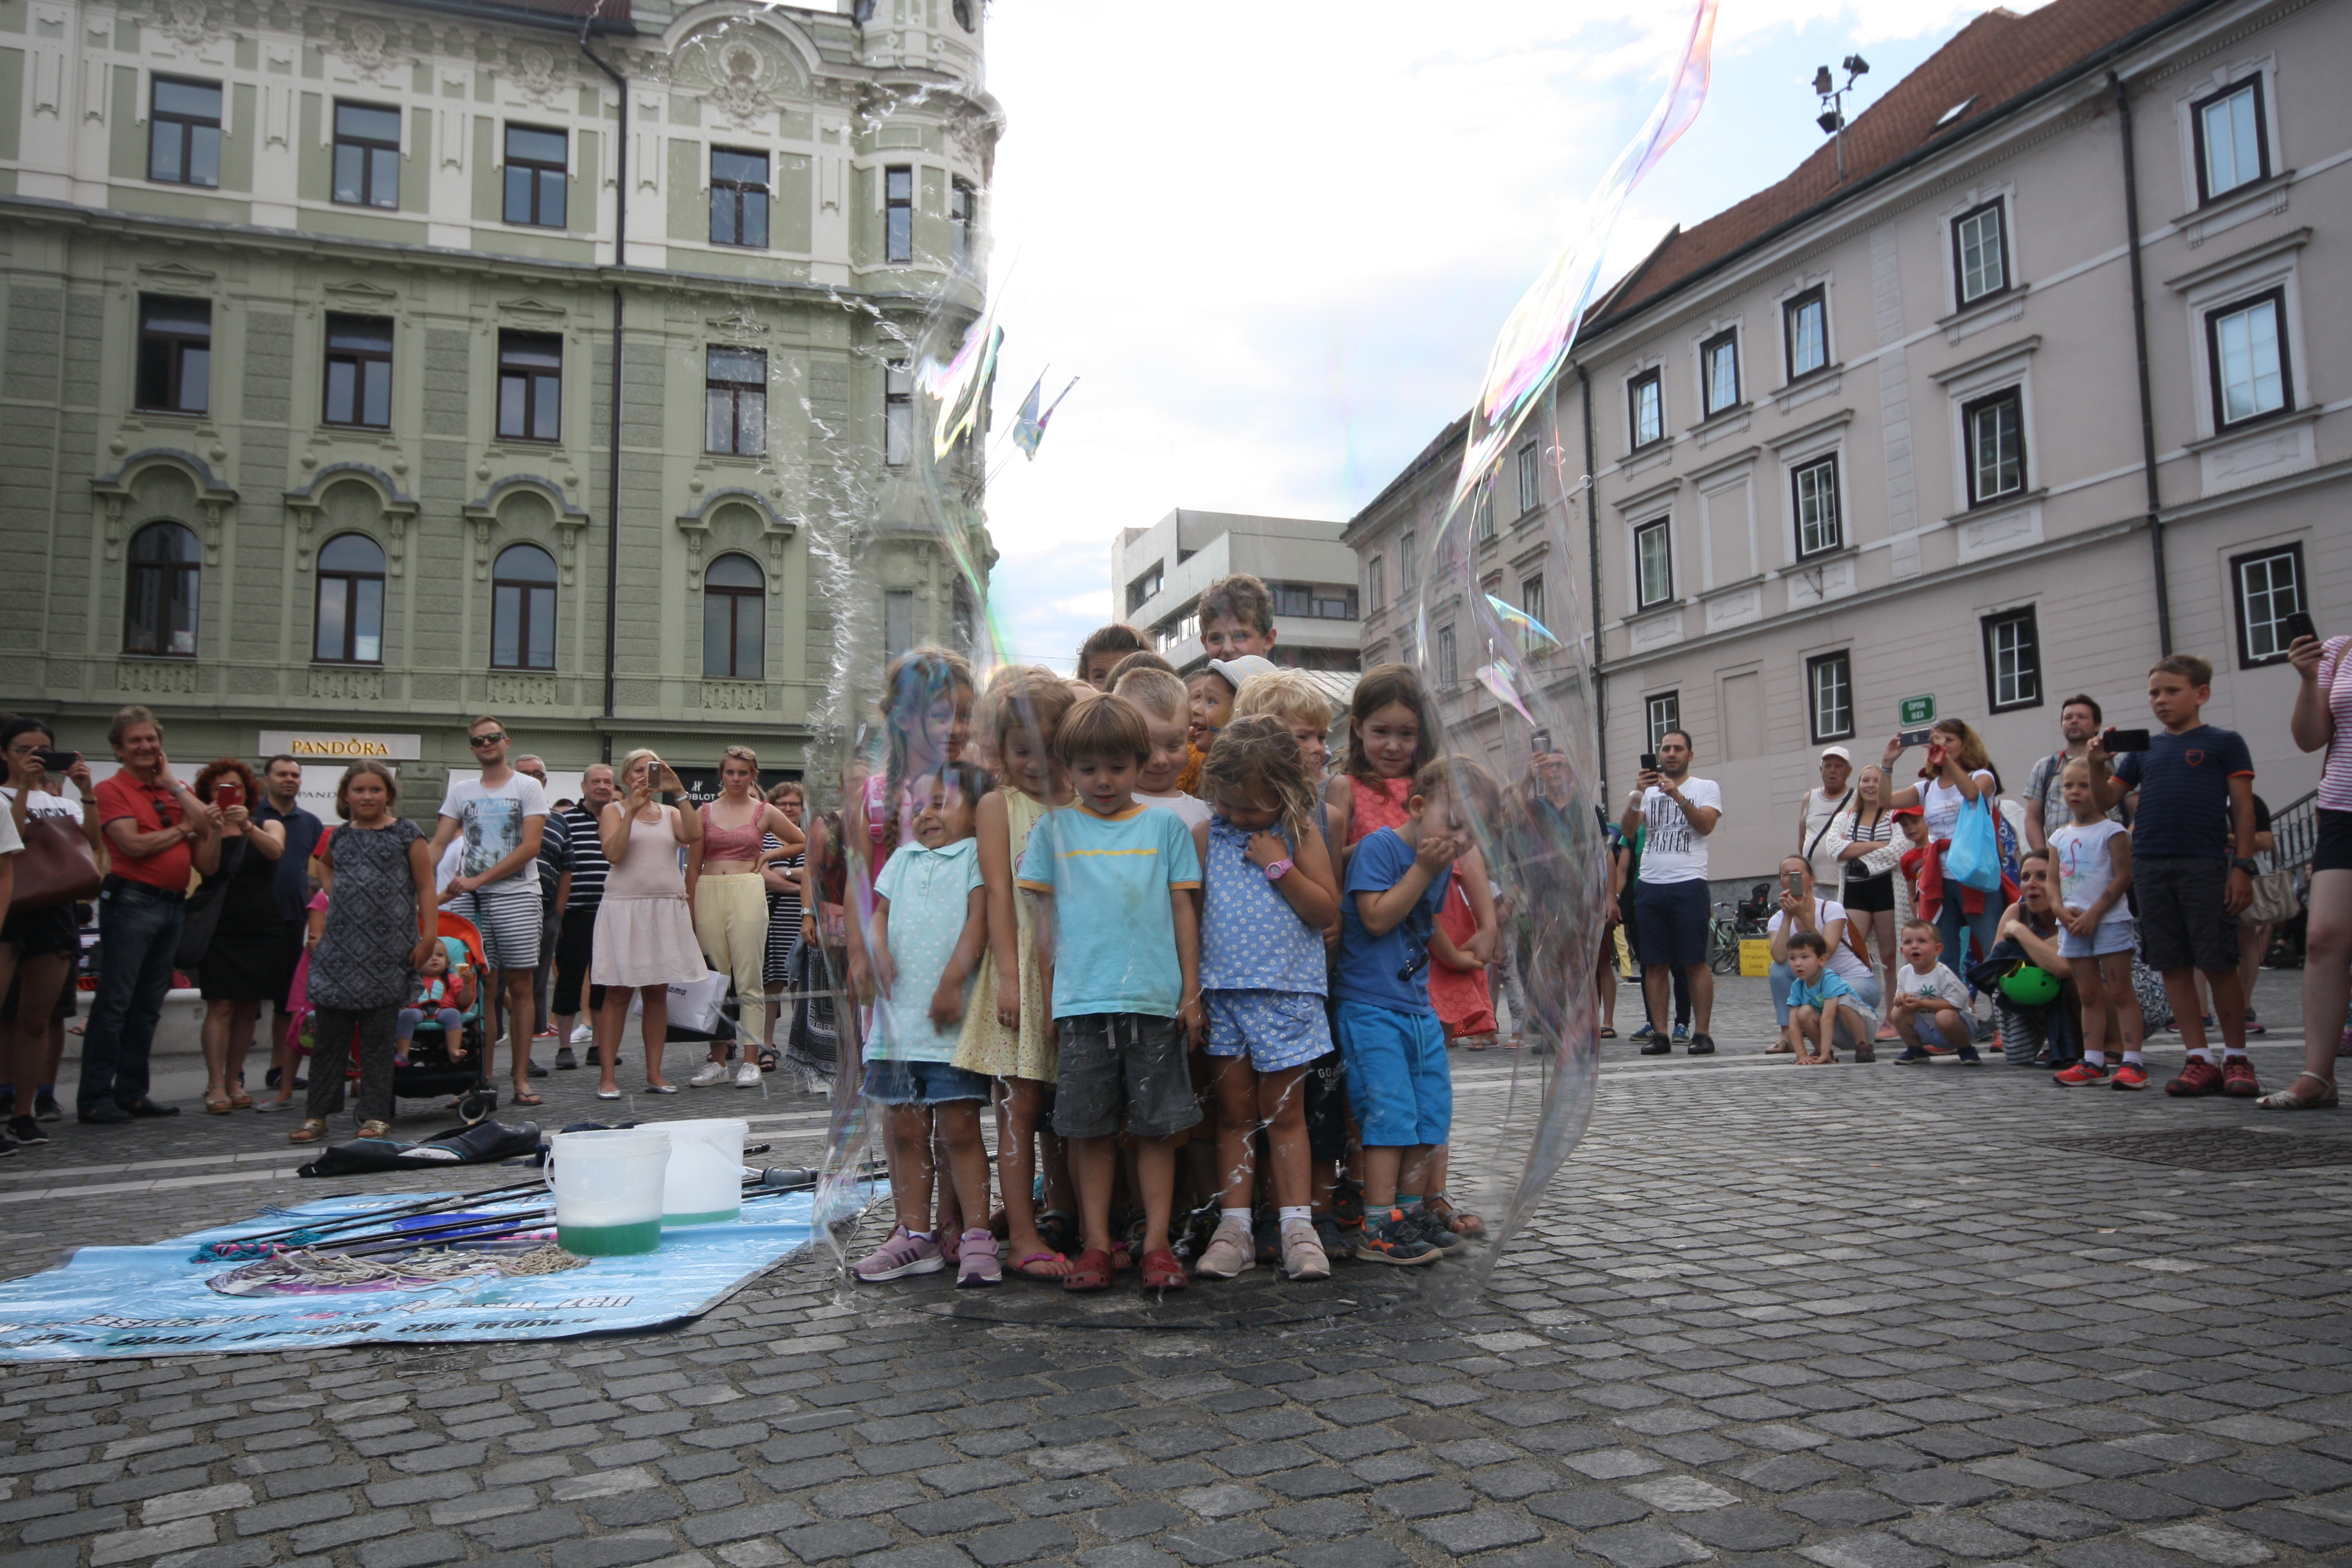 Imagem mostra crianças dentro de uma bolha de sabão observadas por grupo de adultos, em uma praça na Europa